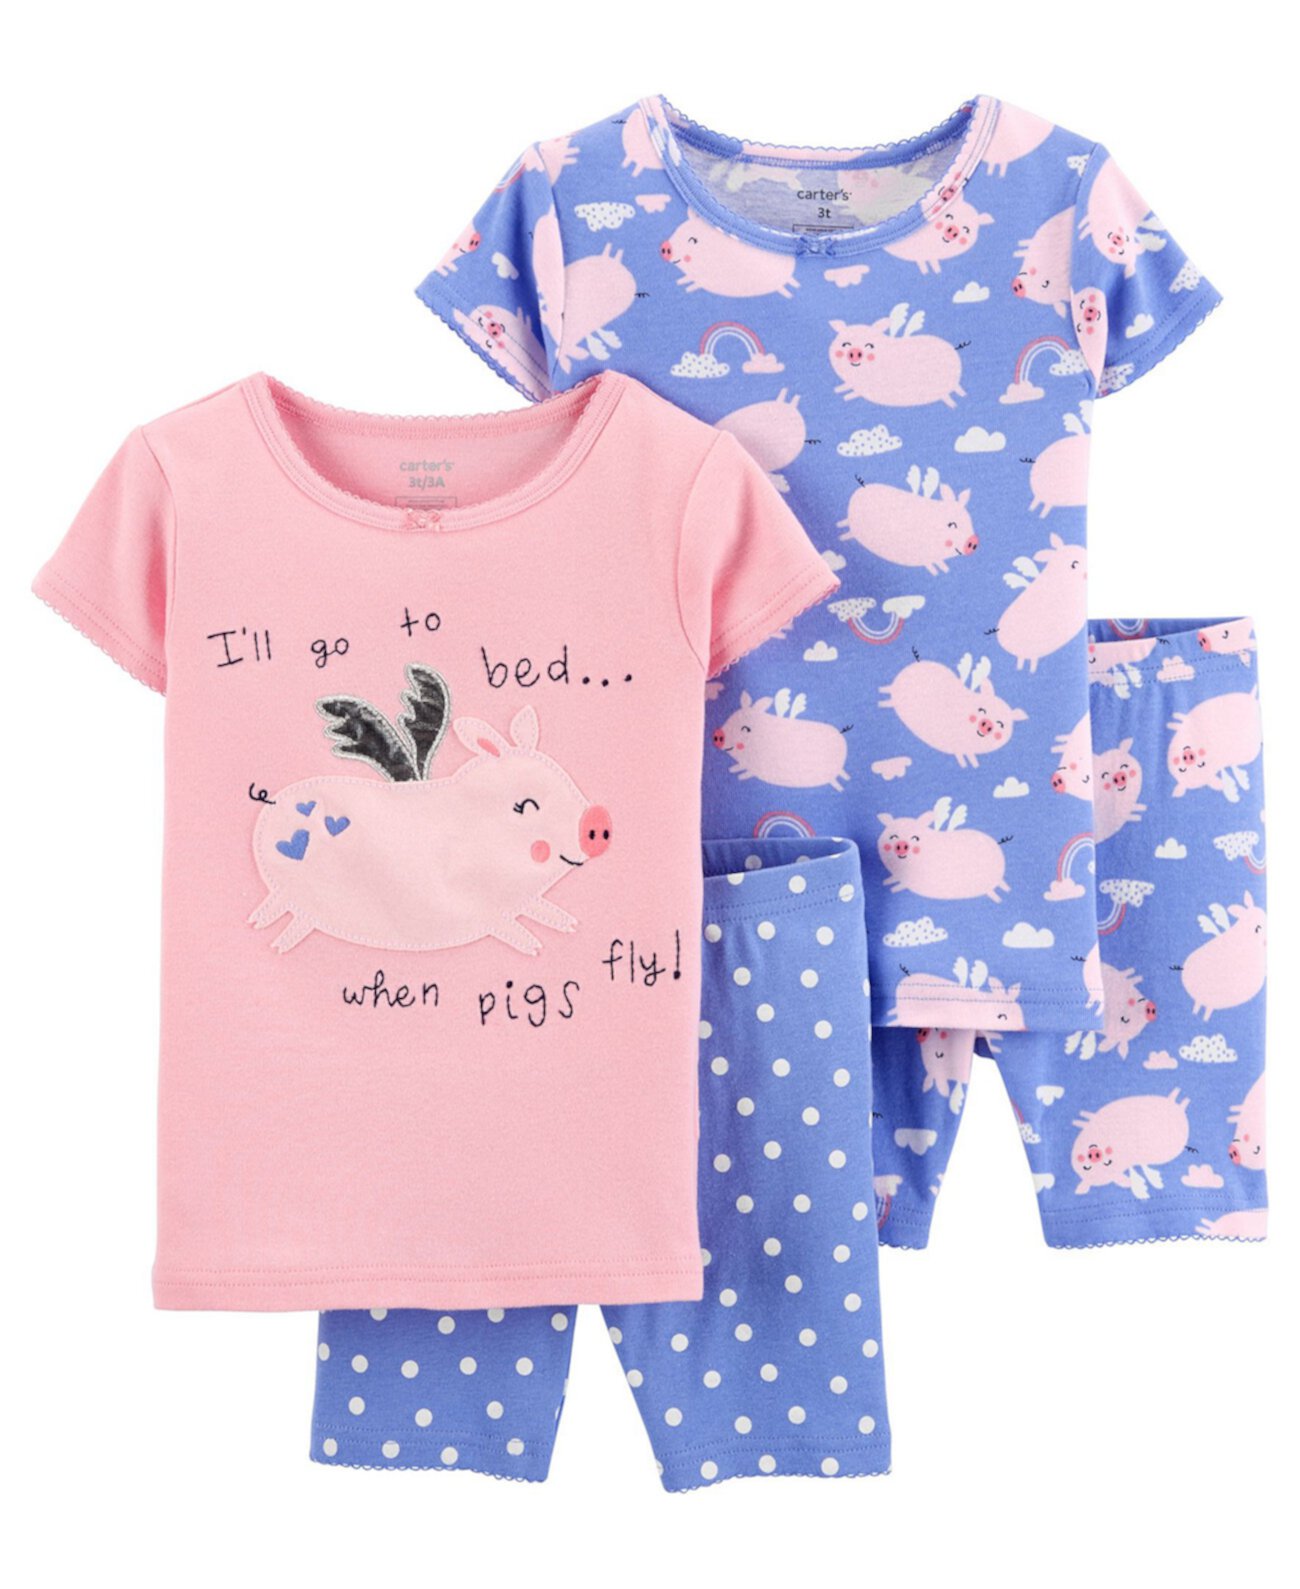 Хлопковые пижамы со свиньей для новорожденных, 4 шт. Carter's